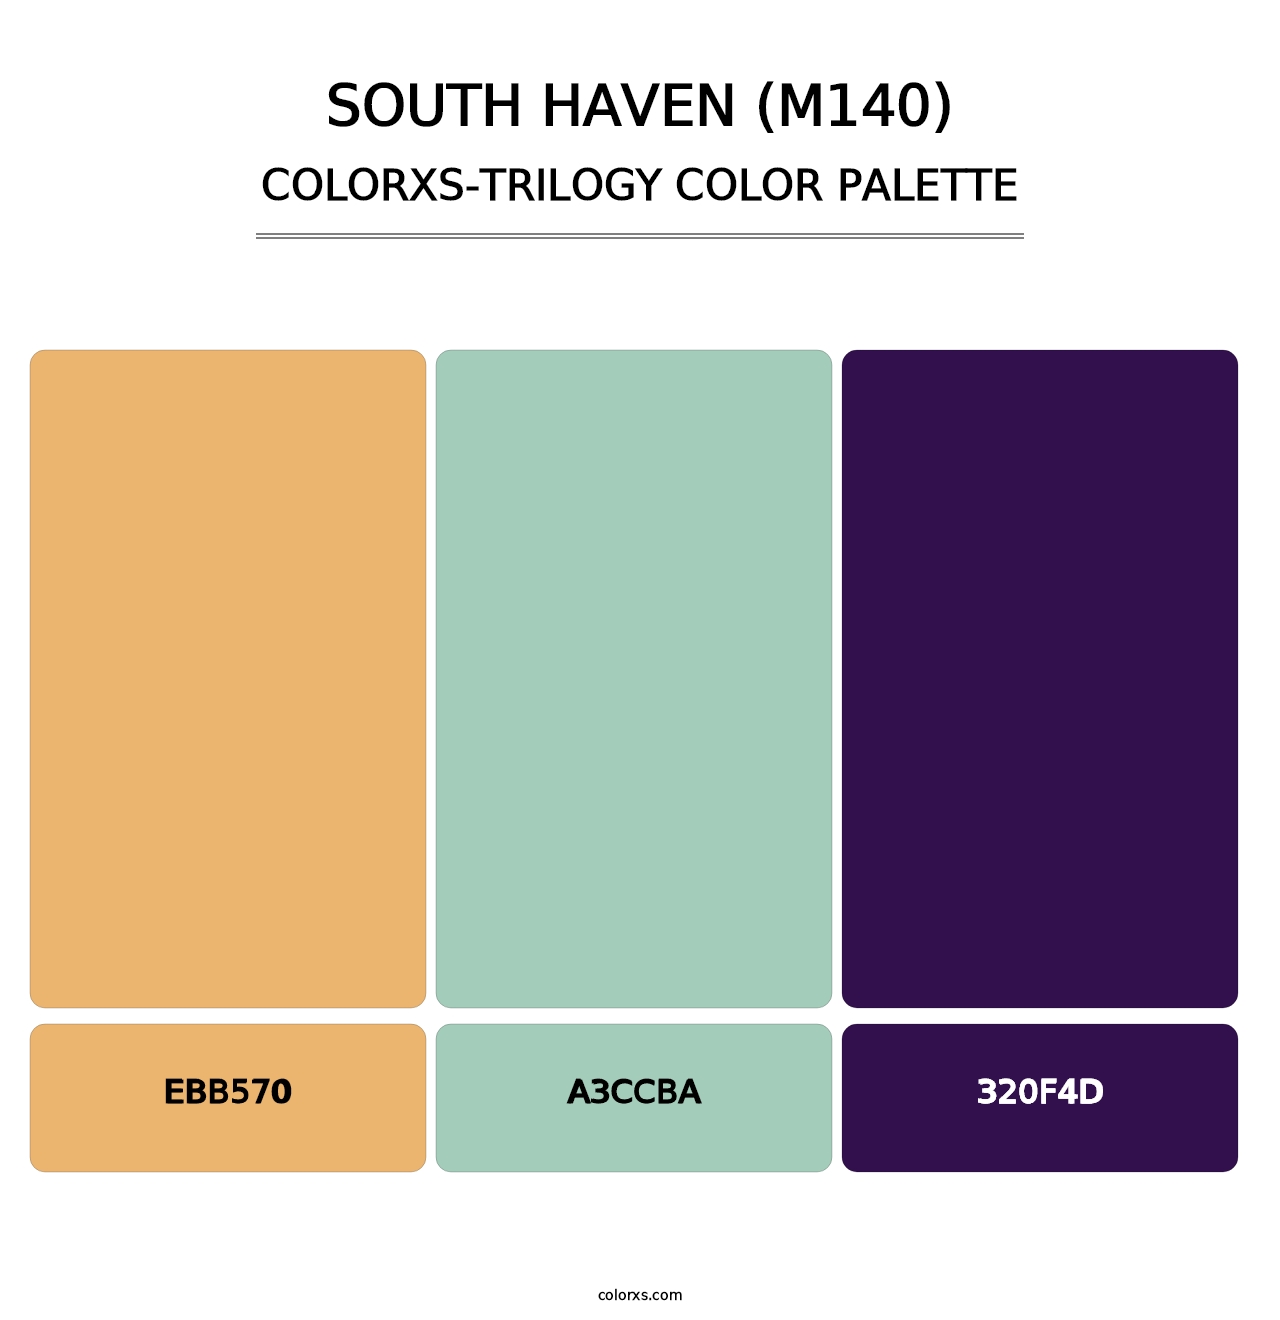 South Haven (M140) - Colorxs Trilogy Palette